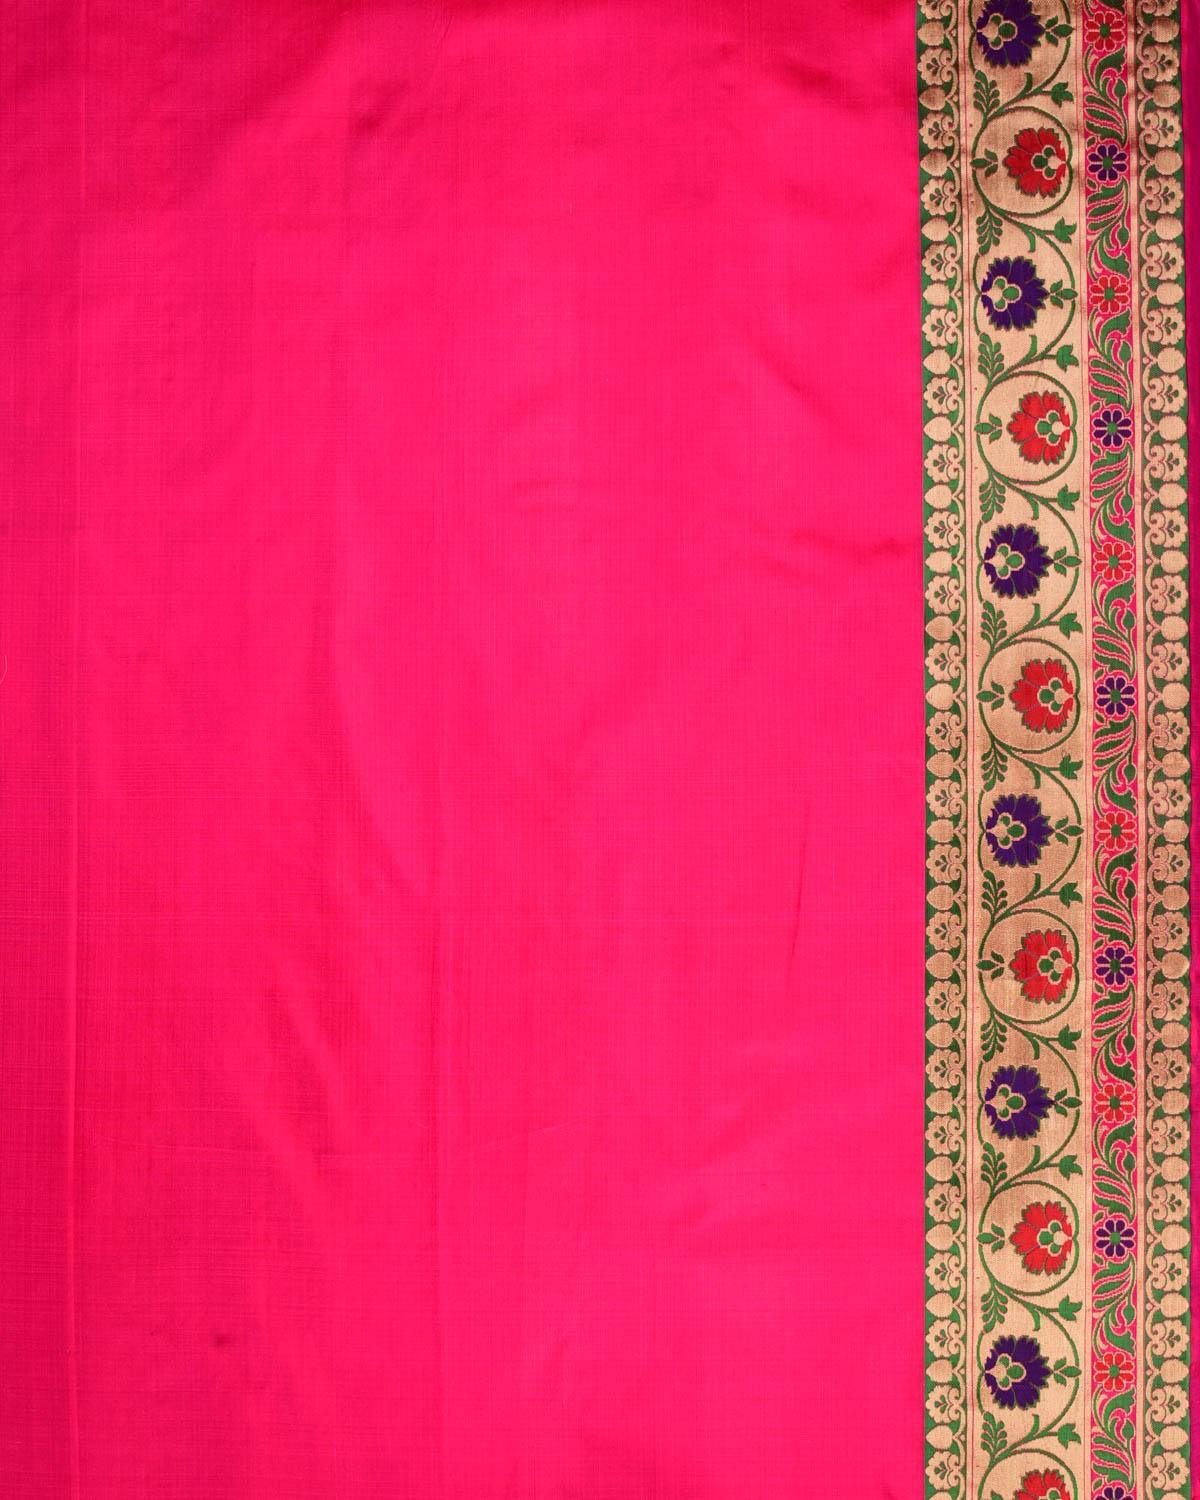 Shot Rani Red Banarasi Patola Chauhara Meena Cutwork Brocade Handwoven Katan Silk Saree - By HolyWeaves, Benares